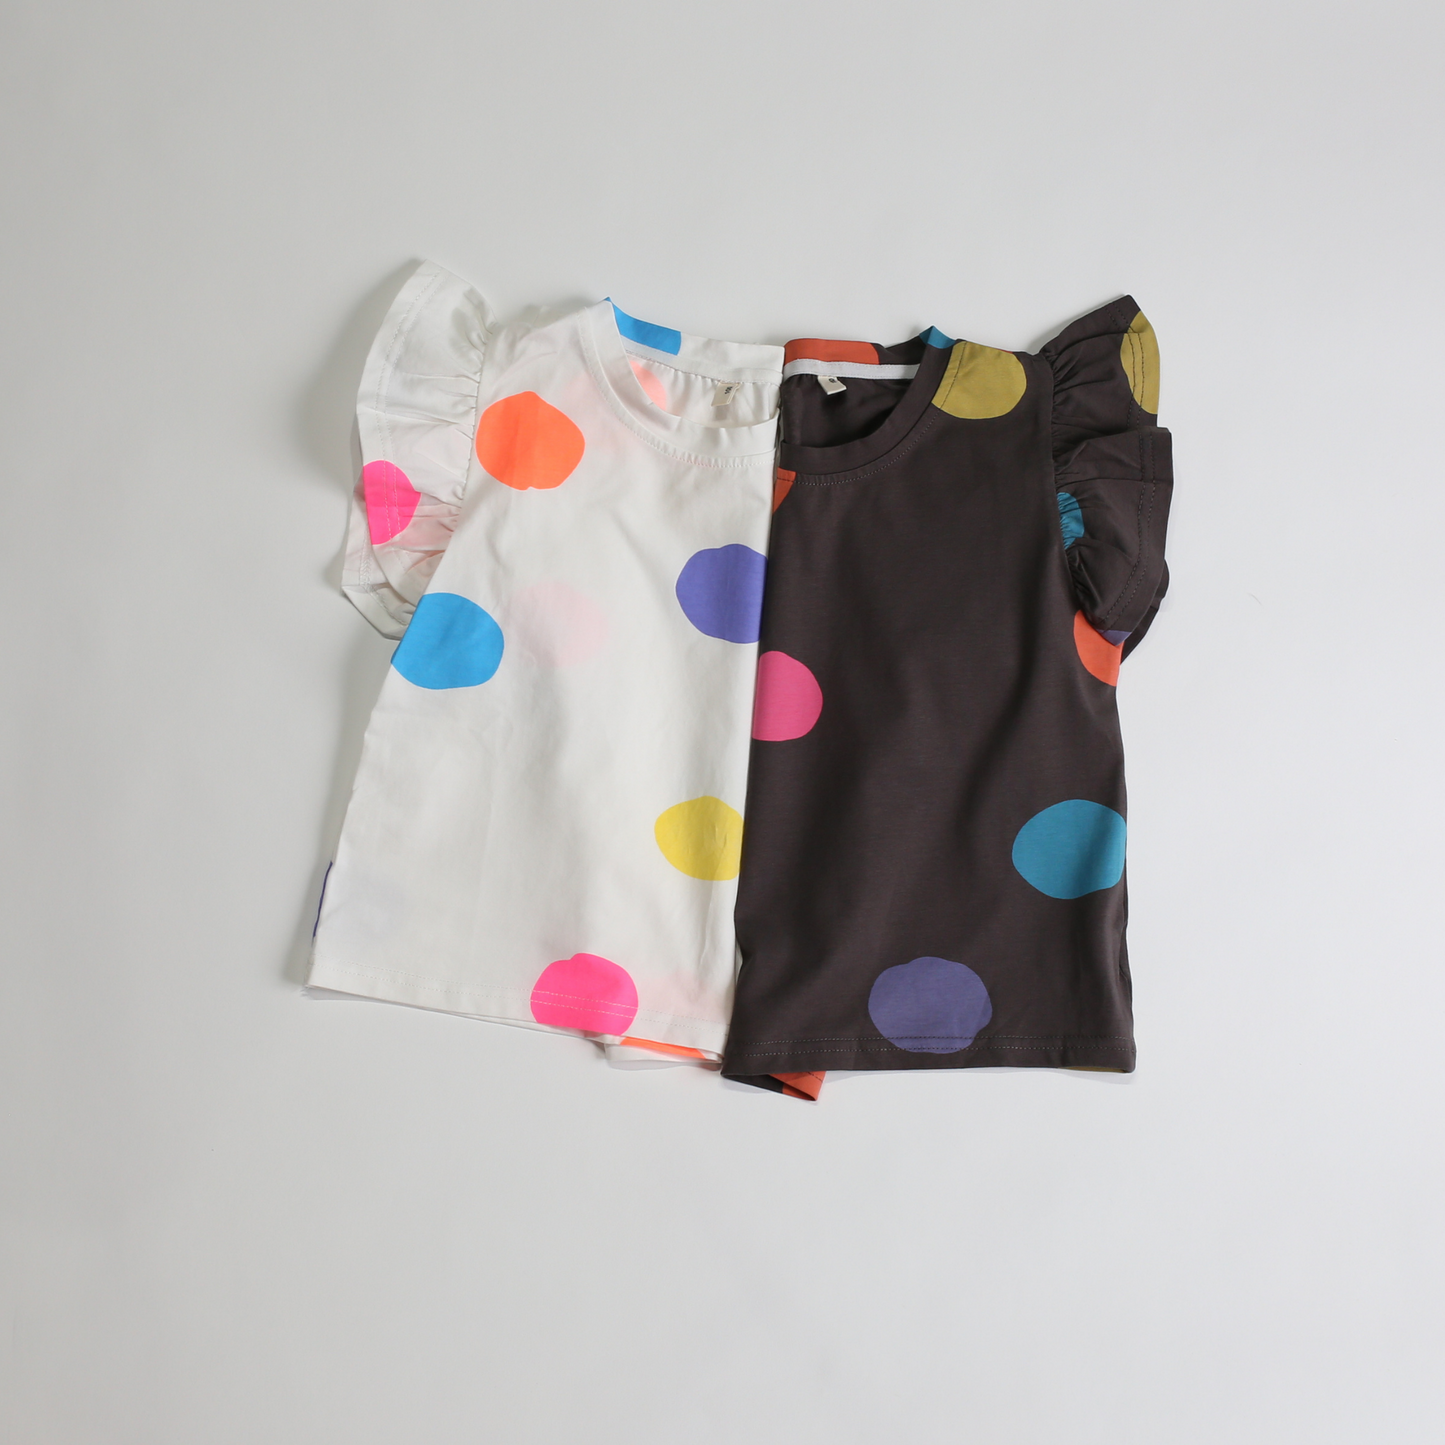 ドット フリル Tシャツ / dot frill tee (こども服) - kids clothes shop GUZUGUZU